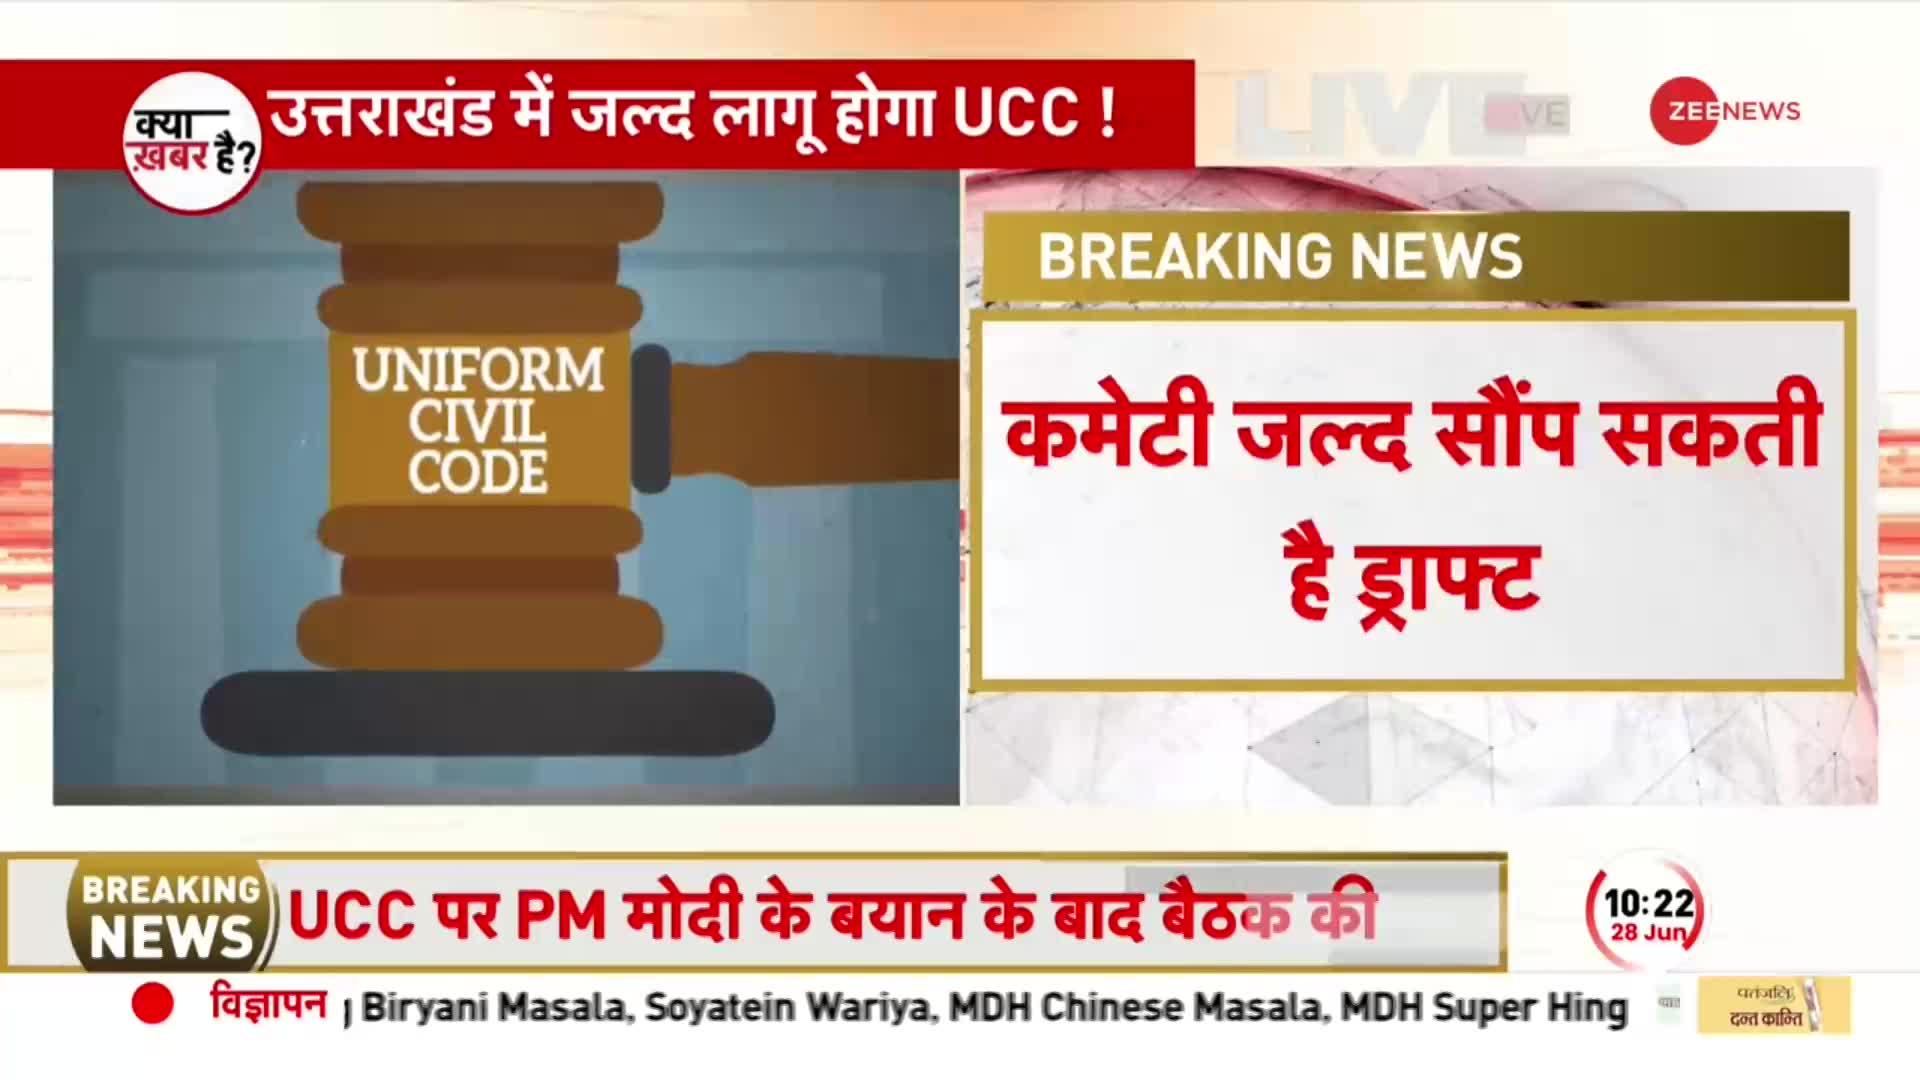 Uniform Civil Code: Uttarakhand में UCC का ड्राफ्ट लगभग तैयार, अब लागू होने का इंतजार!